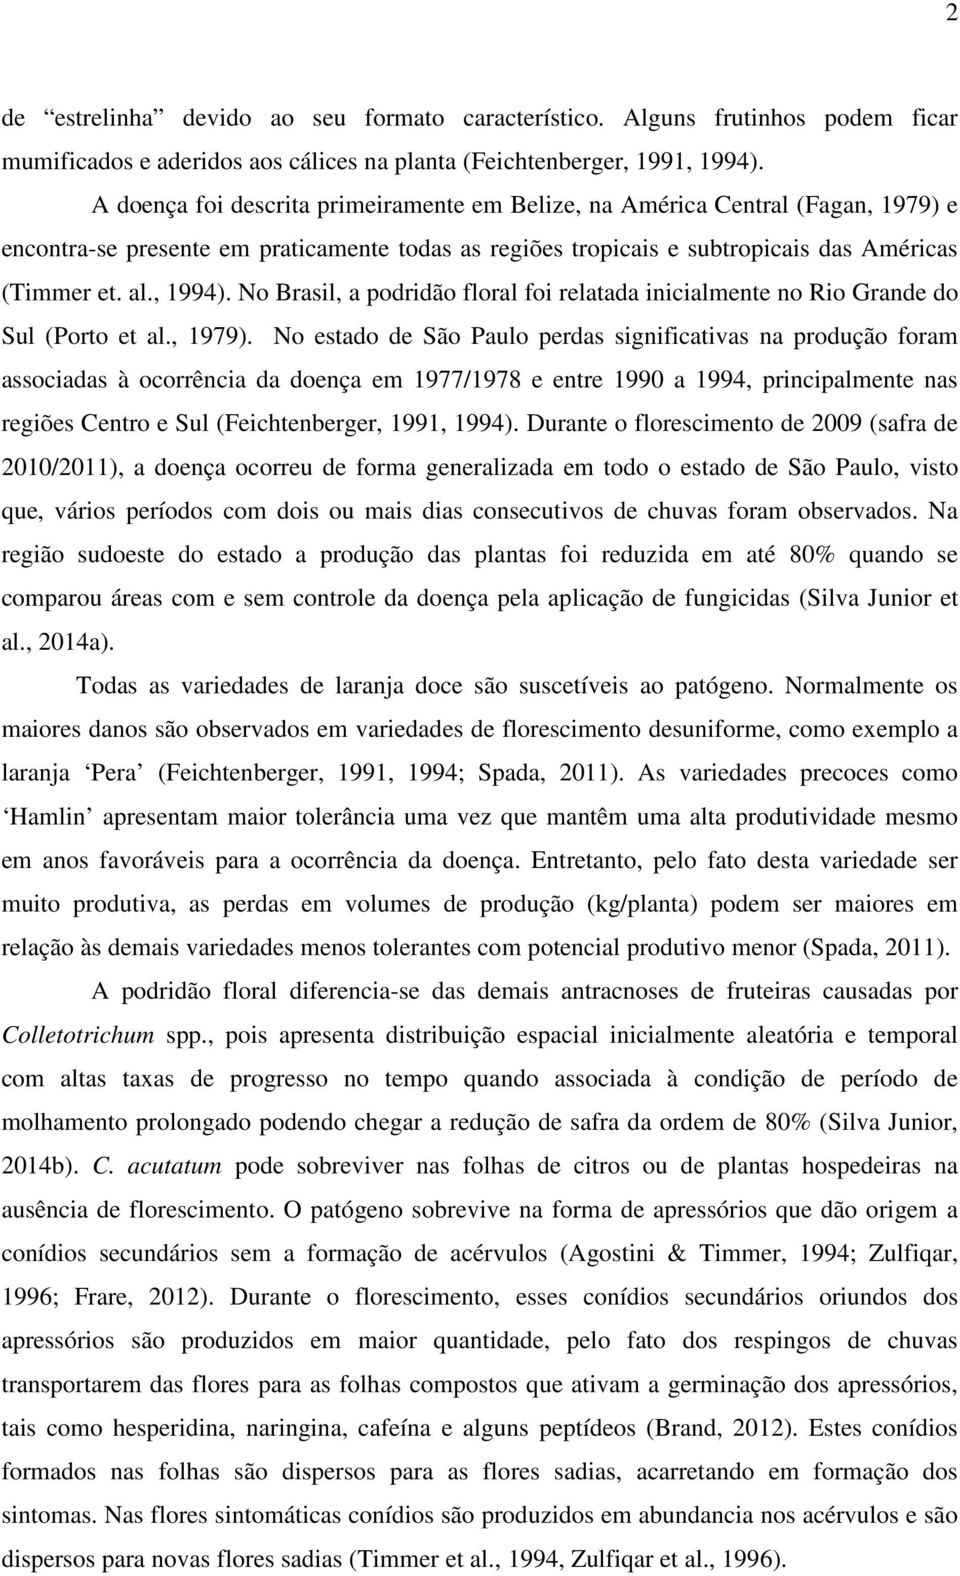 No Brasil, a podridão floral foi relatada inicialmente no Rio Grande do Sul (Porto et al., 1979).